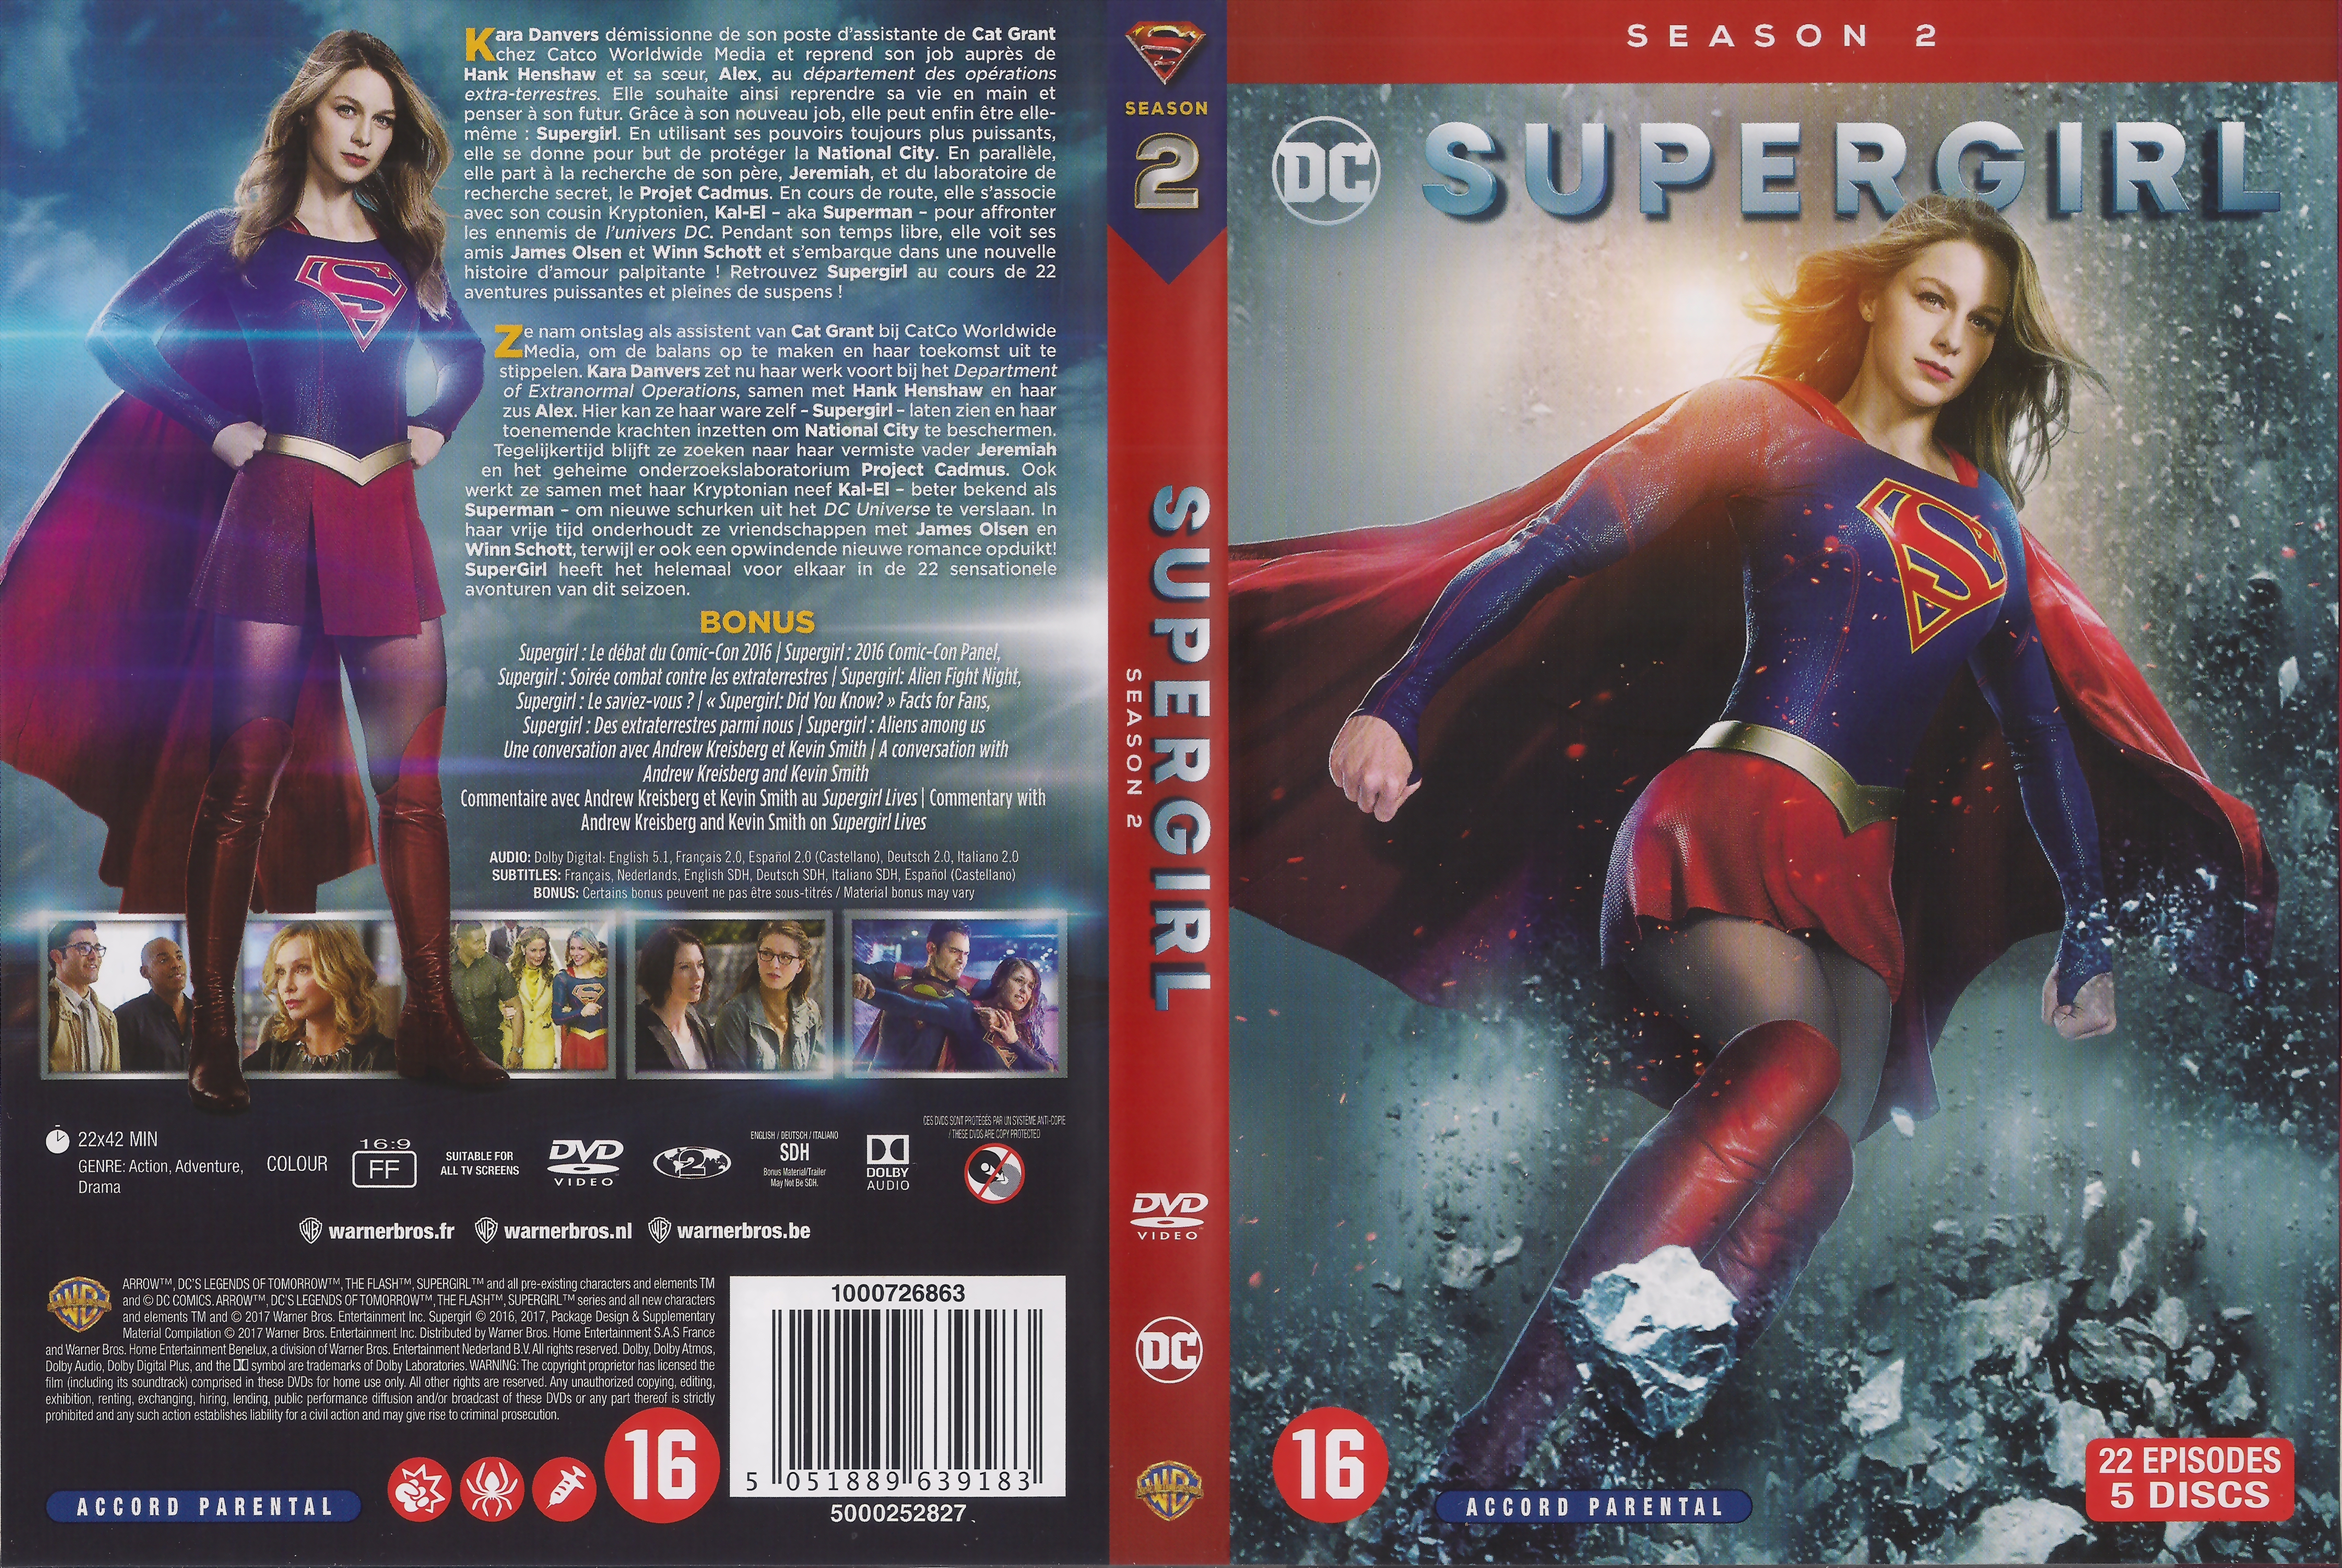 Jaquette DVD Supergirl saison 2